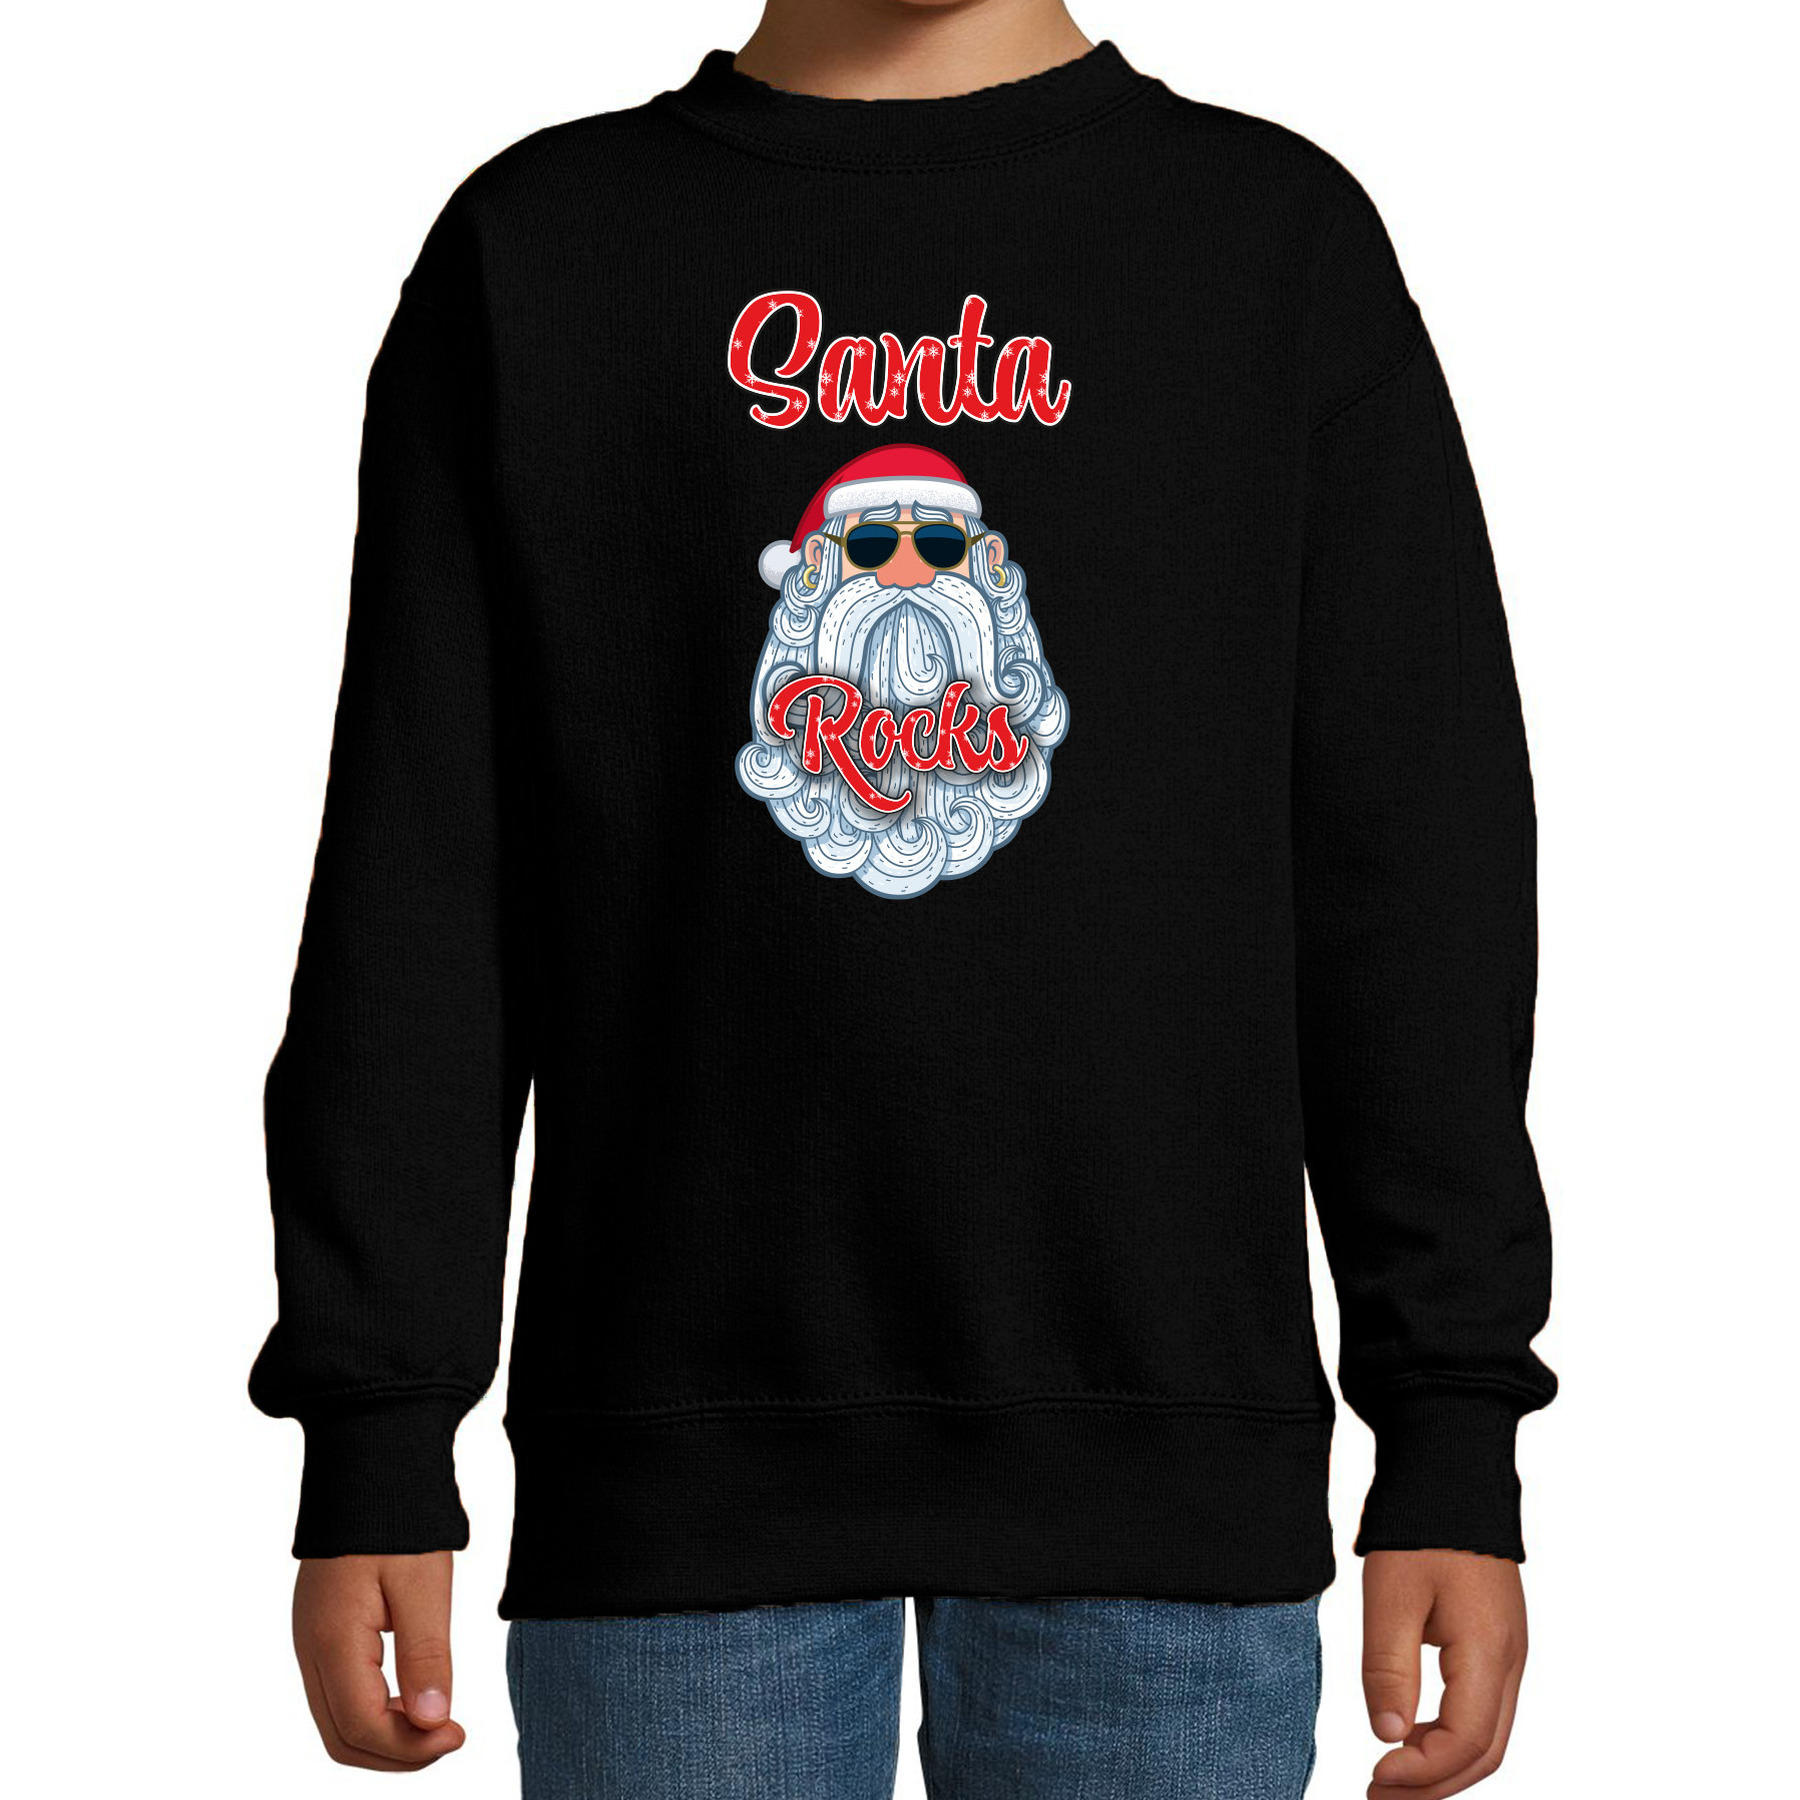 Kersttrui-sweater voor kinderen Kerstman Santa Rocks zwart